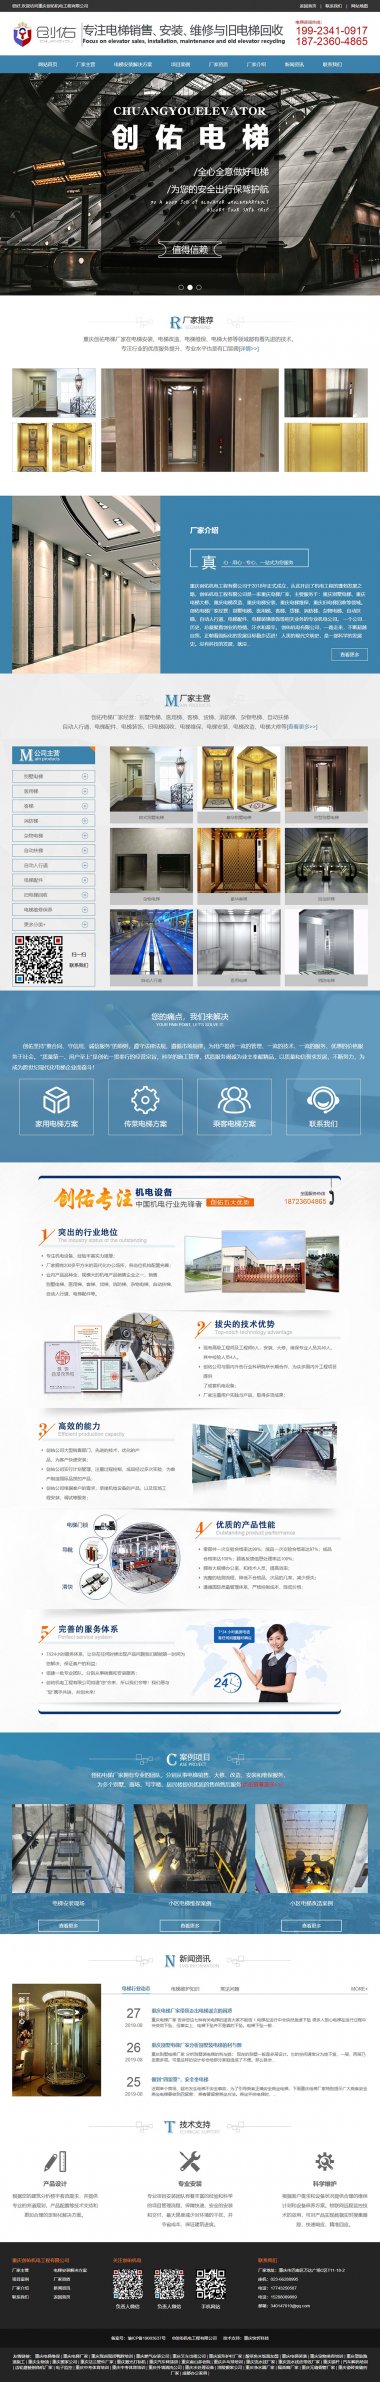 重庆创佑机电工程有限公司网站建设案例